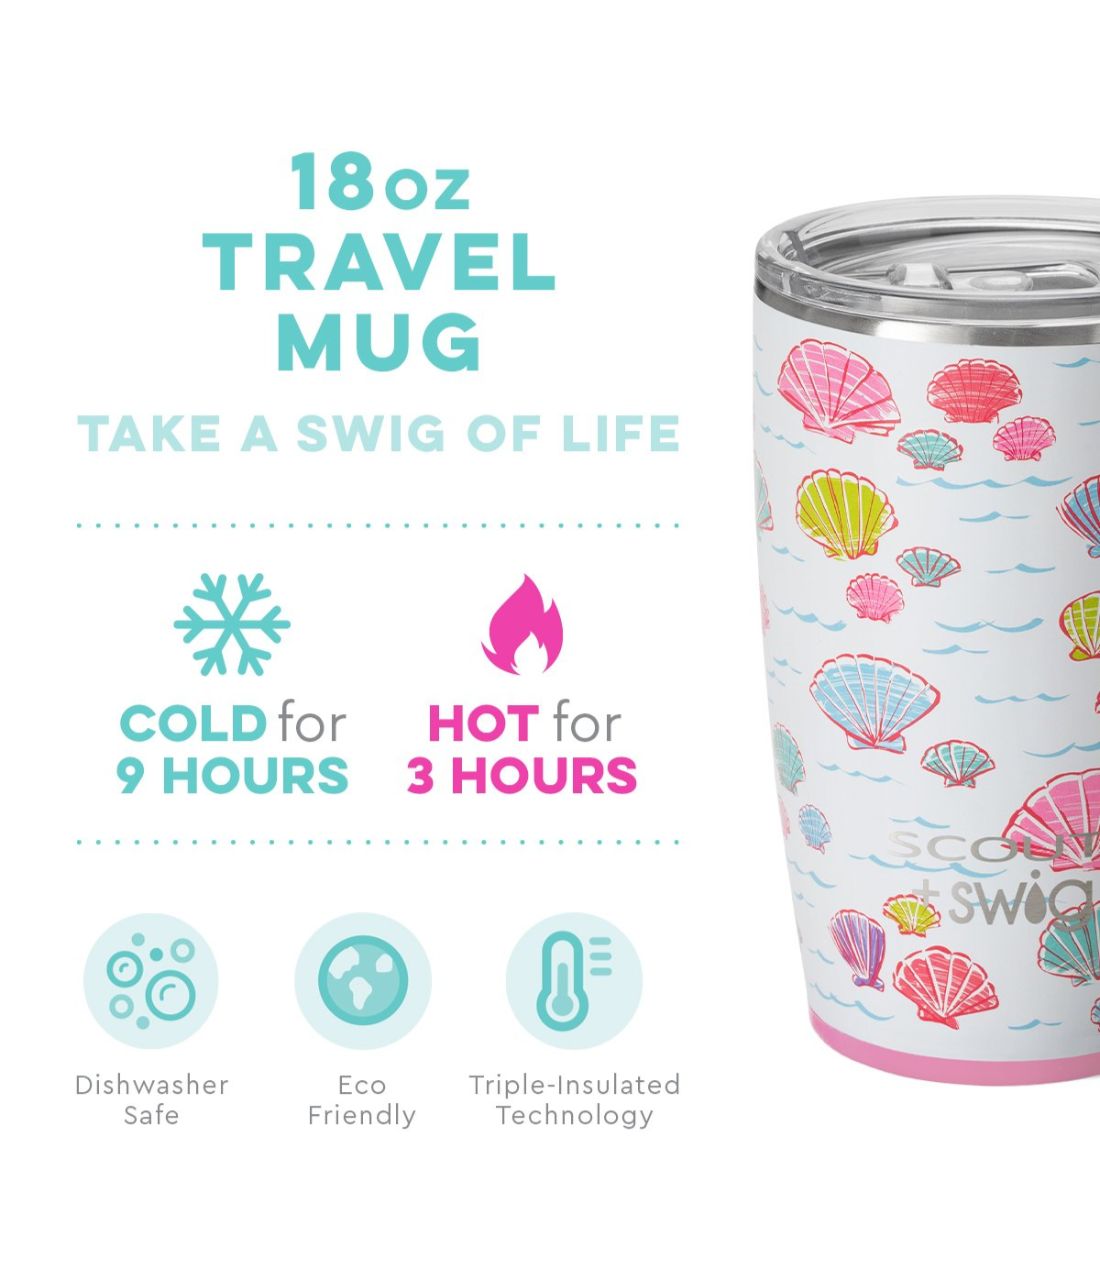 Swig Life Christmas 18 oz Travel Mug